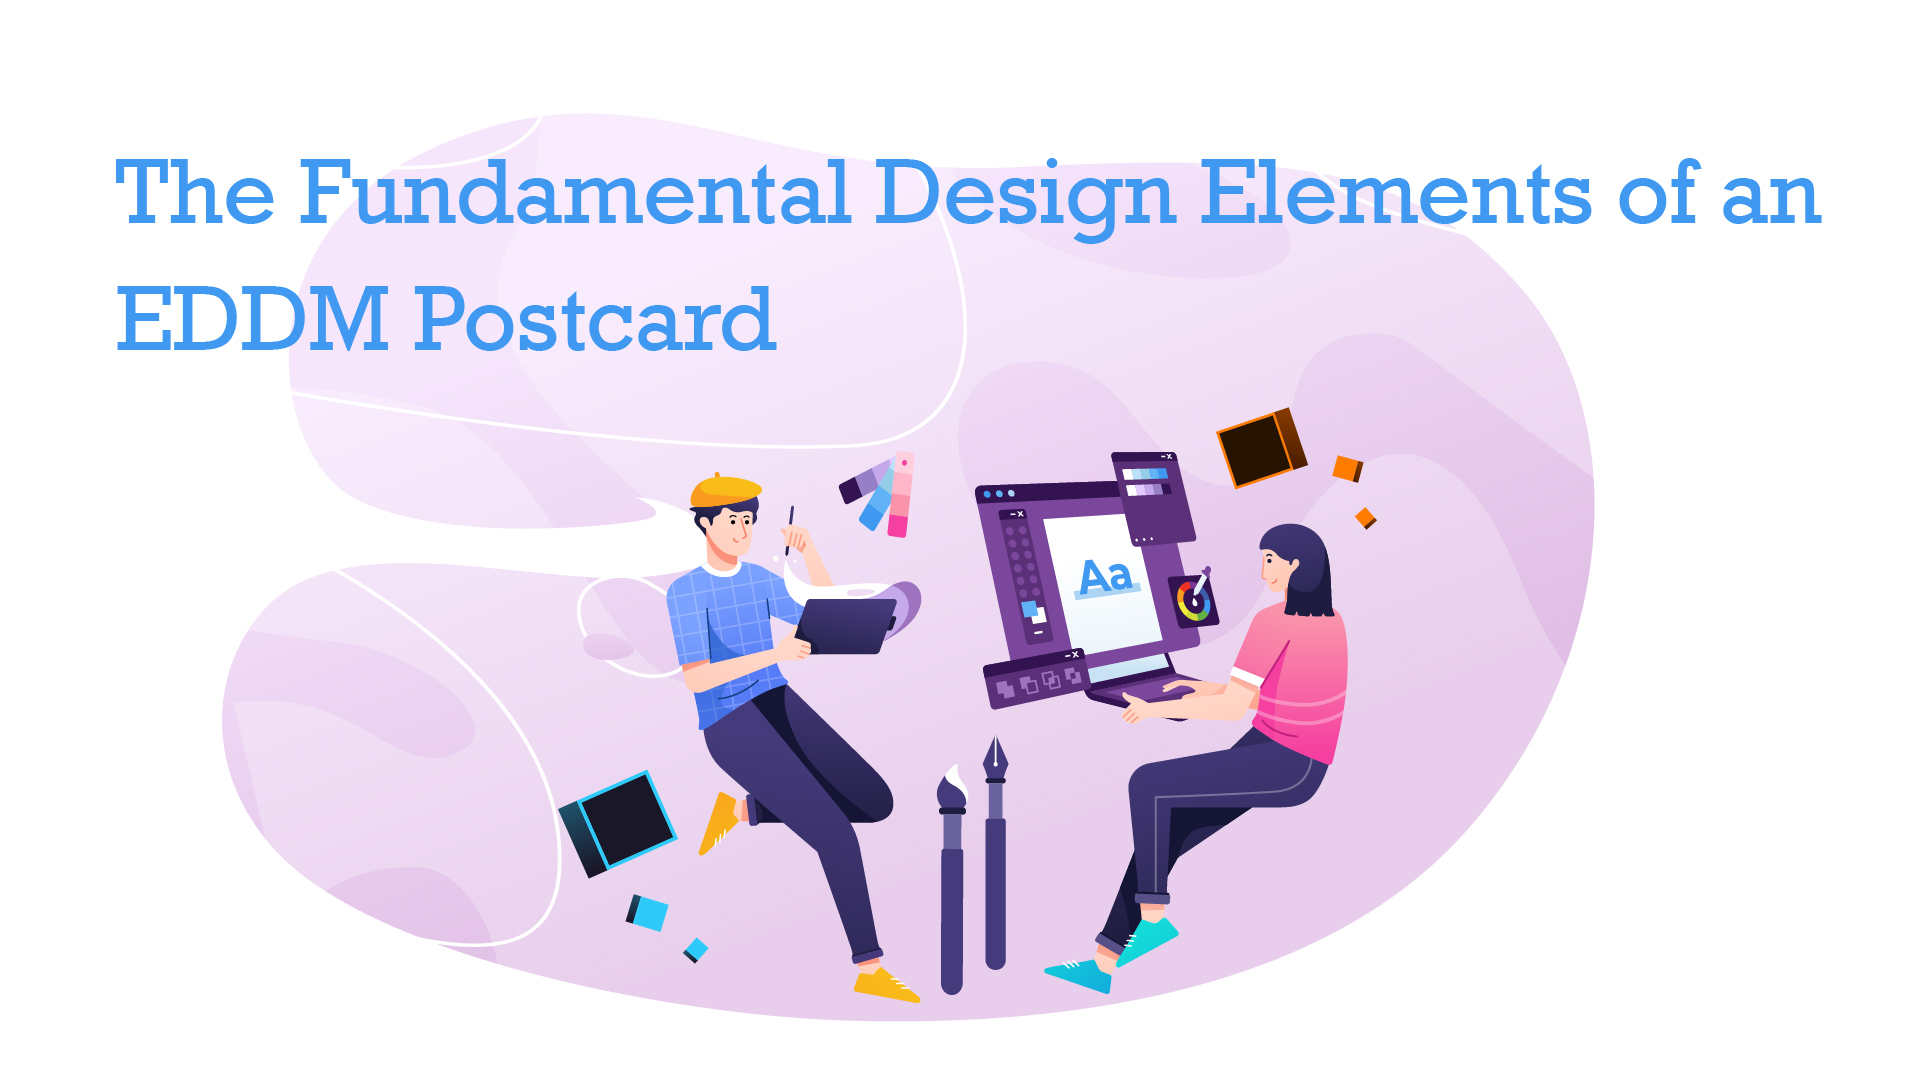 EDDM postcard design